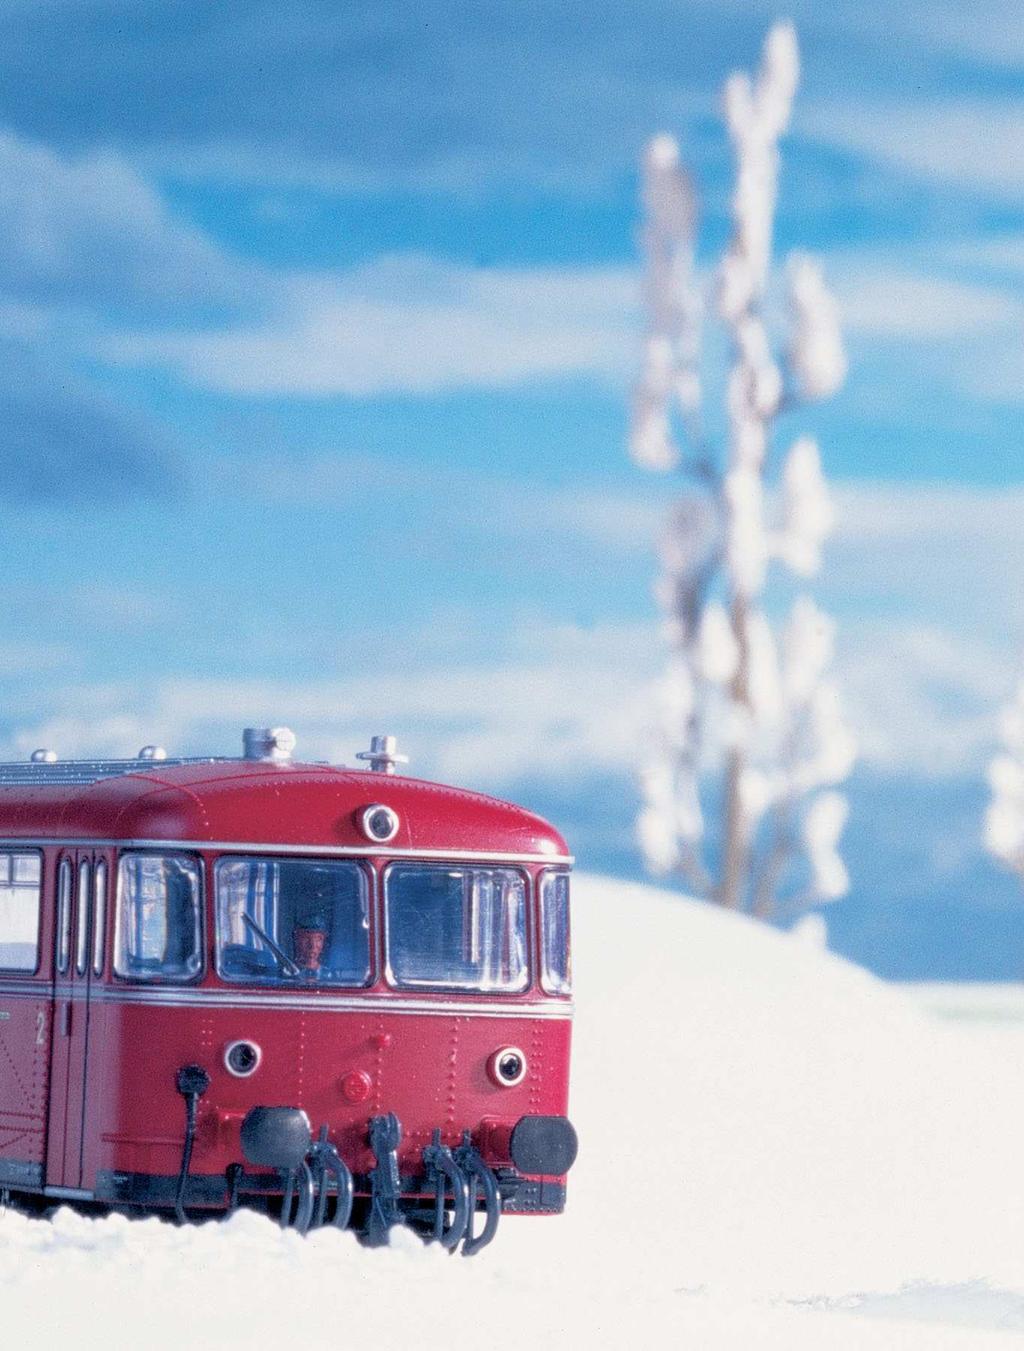 Pulverschnee bedeckt die Landschaft mit einem herrlich weißen Mantel Bei tiefstehender Wintersonne braust ein roter Schienenbus durch